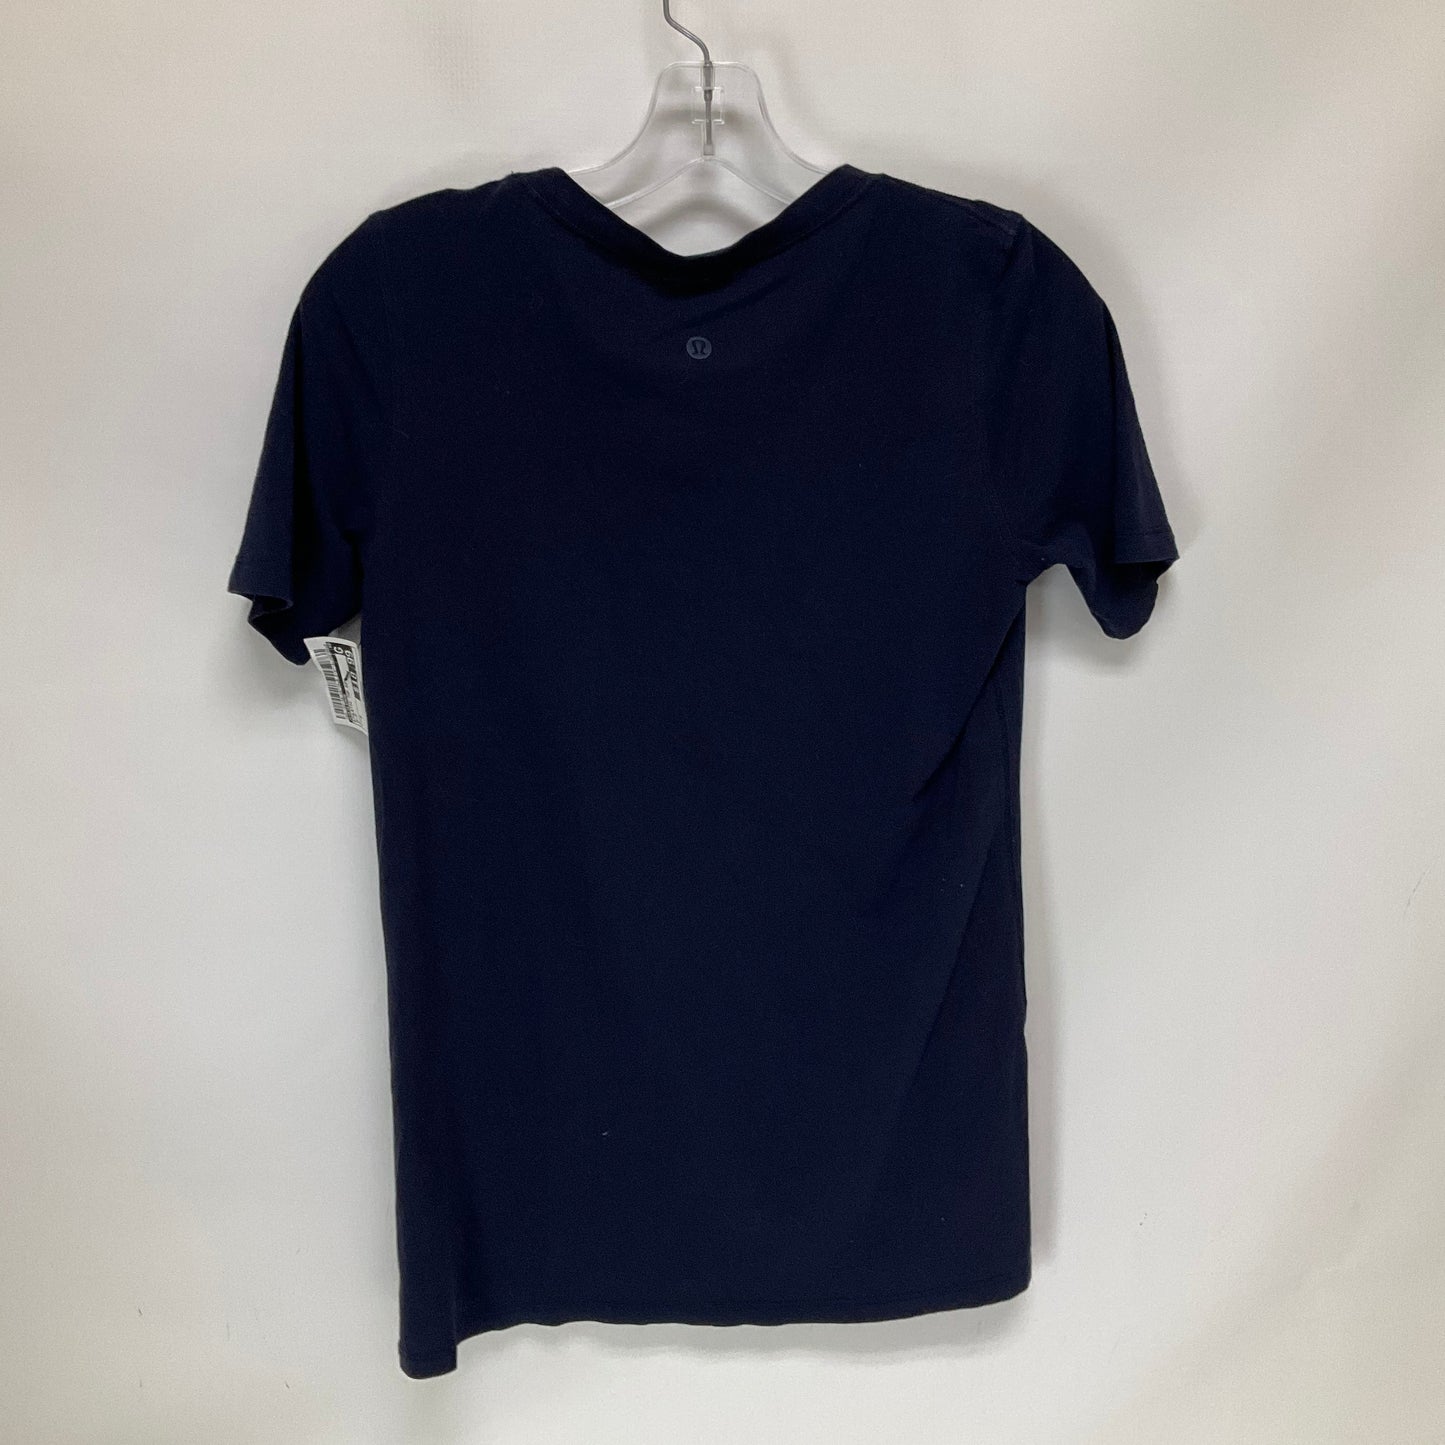 Blue Athletic Top Short Sleeve Lululemon, Size 6